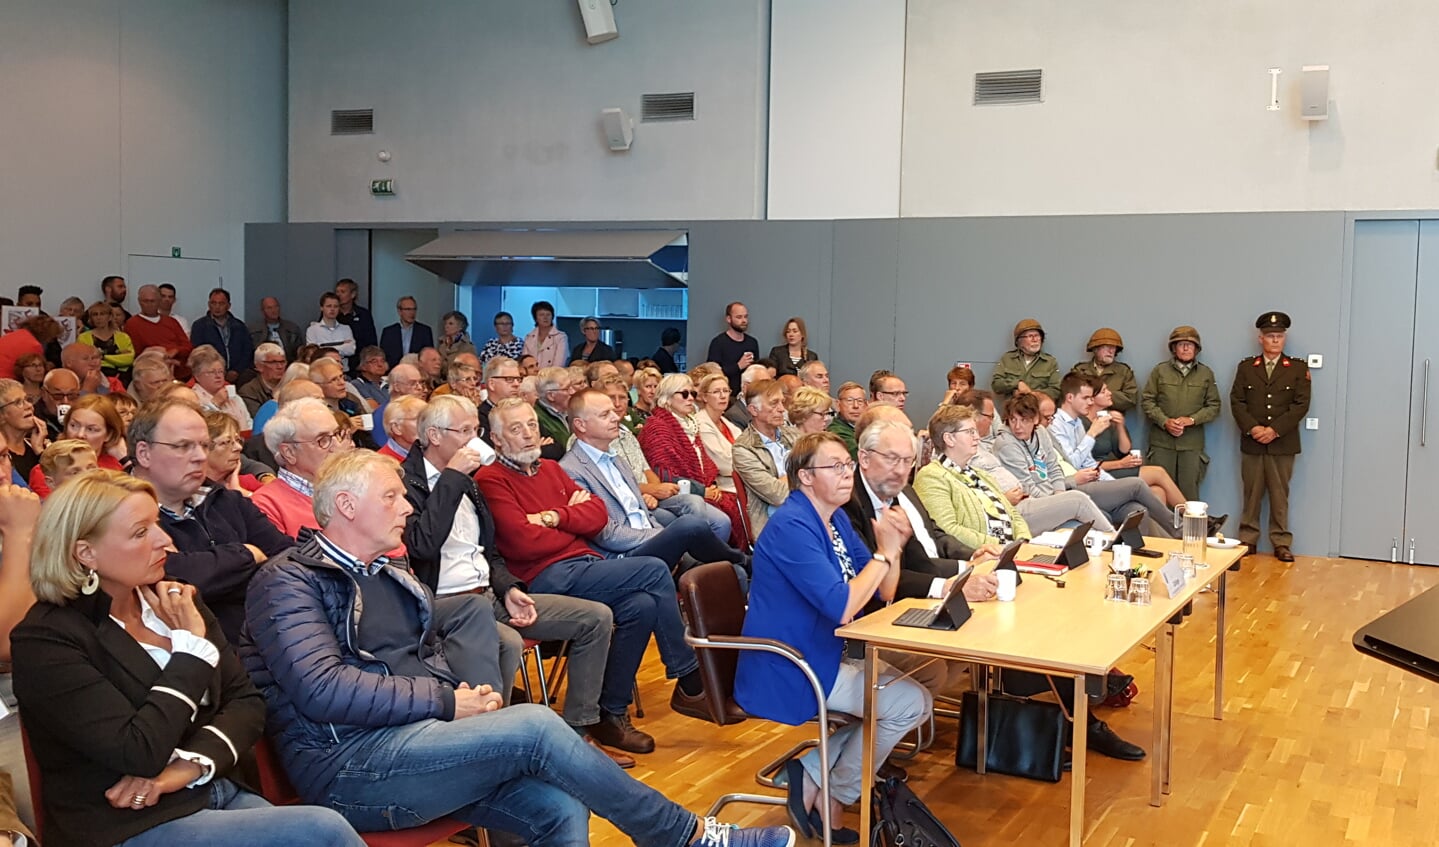 De raadsvergadering werd druk bezocht. Midden in het publiek mede-oprichter Nico de Haan van Houd Scherpenzeel Groen en Gezond.